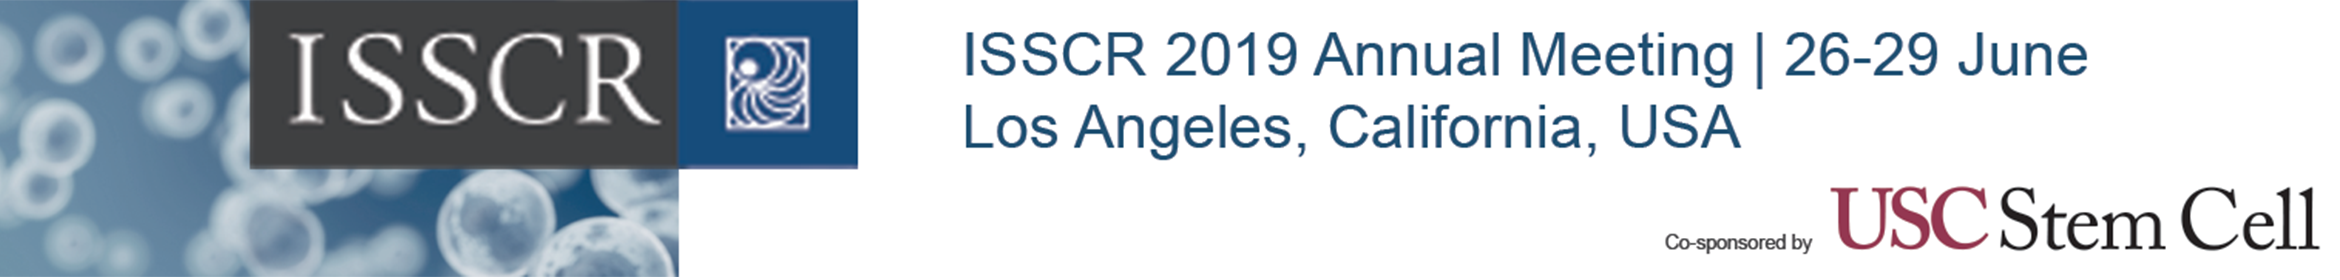 ISSCR 2019 Annual Meeting Main banner